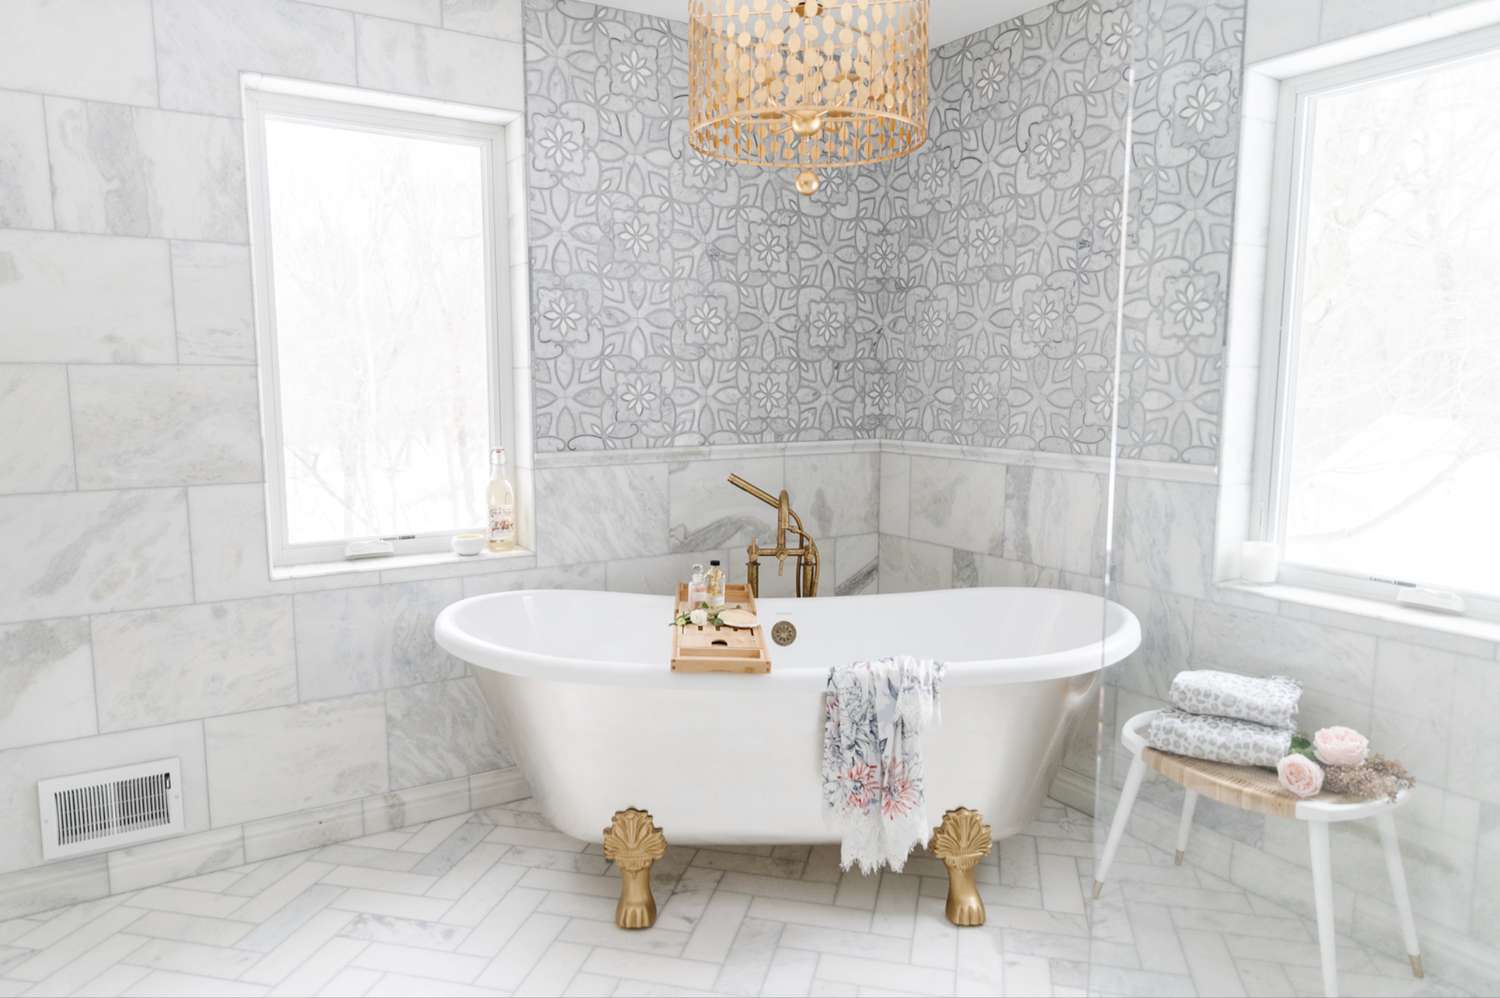 banheiro de mármore com lustre dourado